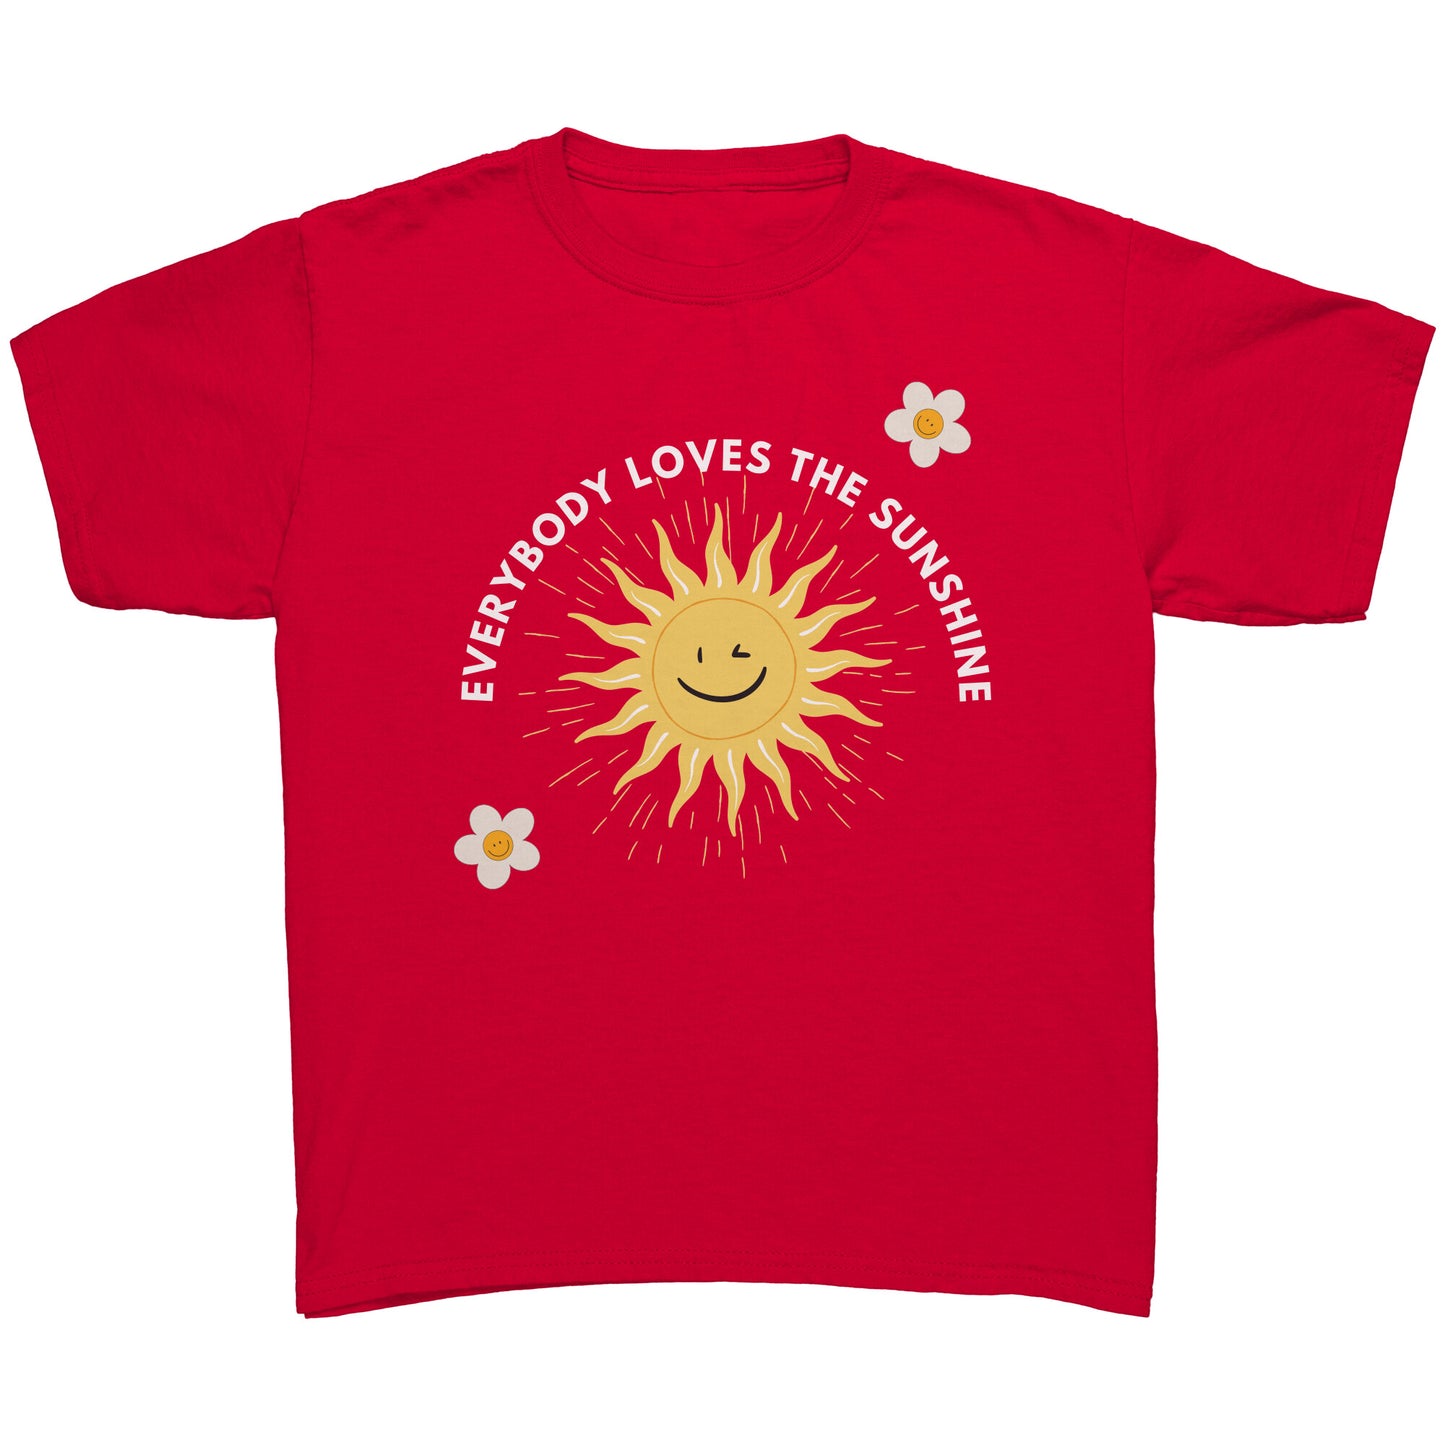 Loving sunshine Youth T-shirt